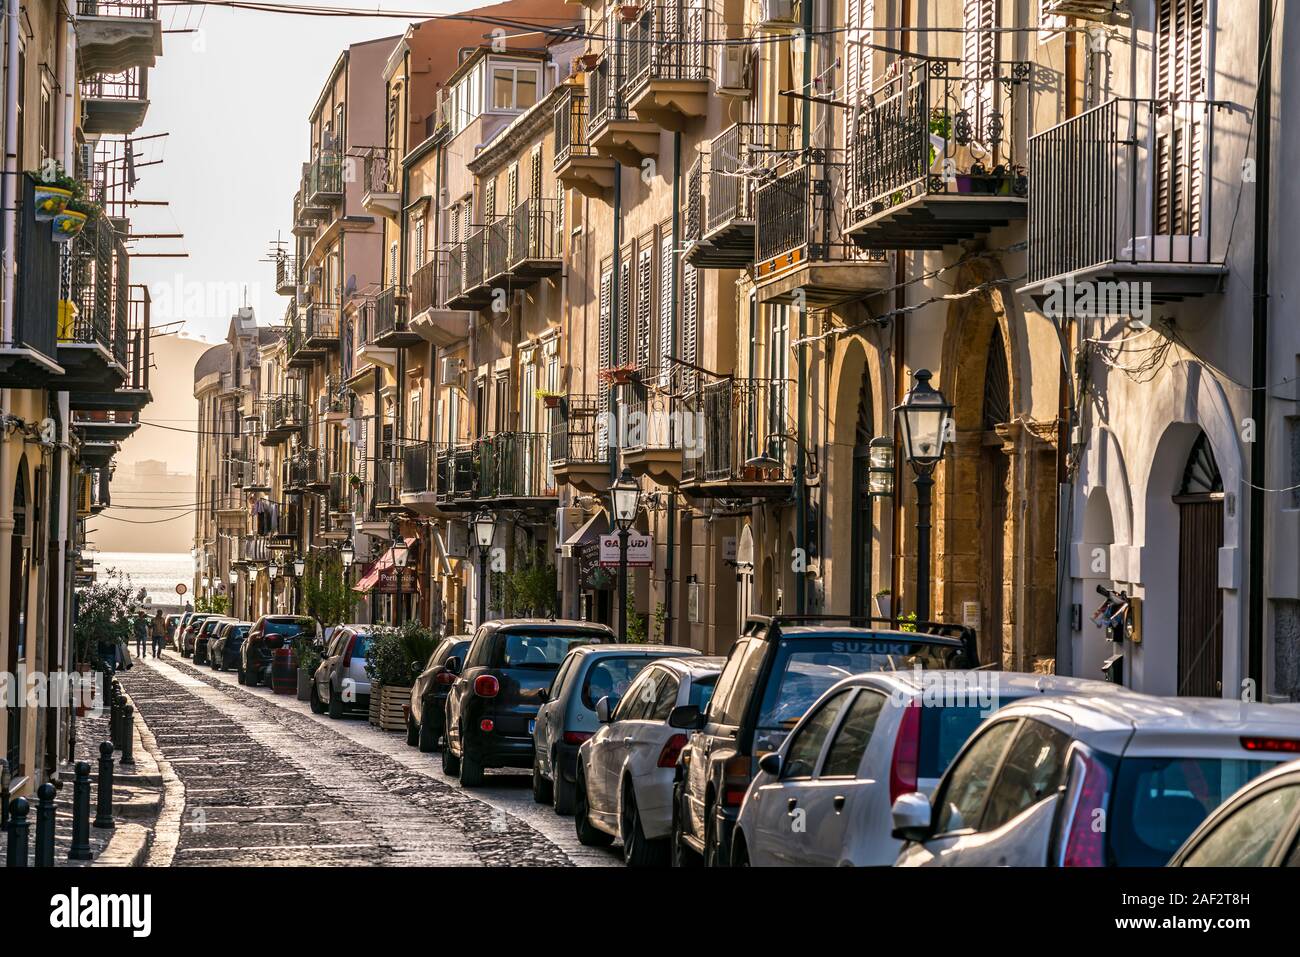 Strasse in der historischen Altstadt von Cefalu, Sizilien, Italien, Europa  | street in the historic center of  Cefalu, Sicily, Italy, Europe Stock Photo